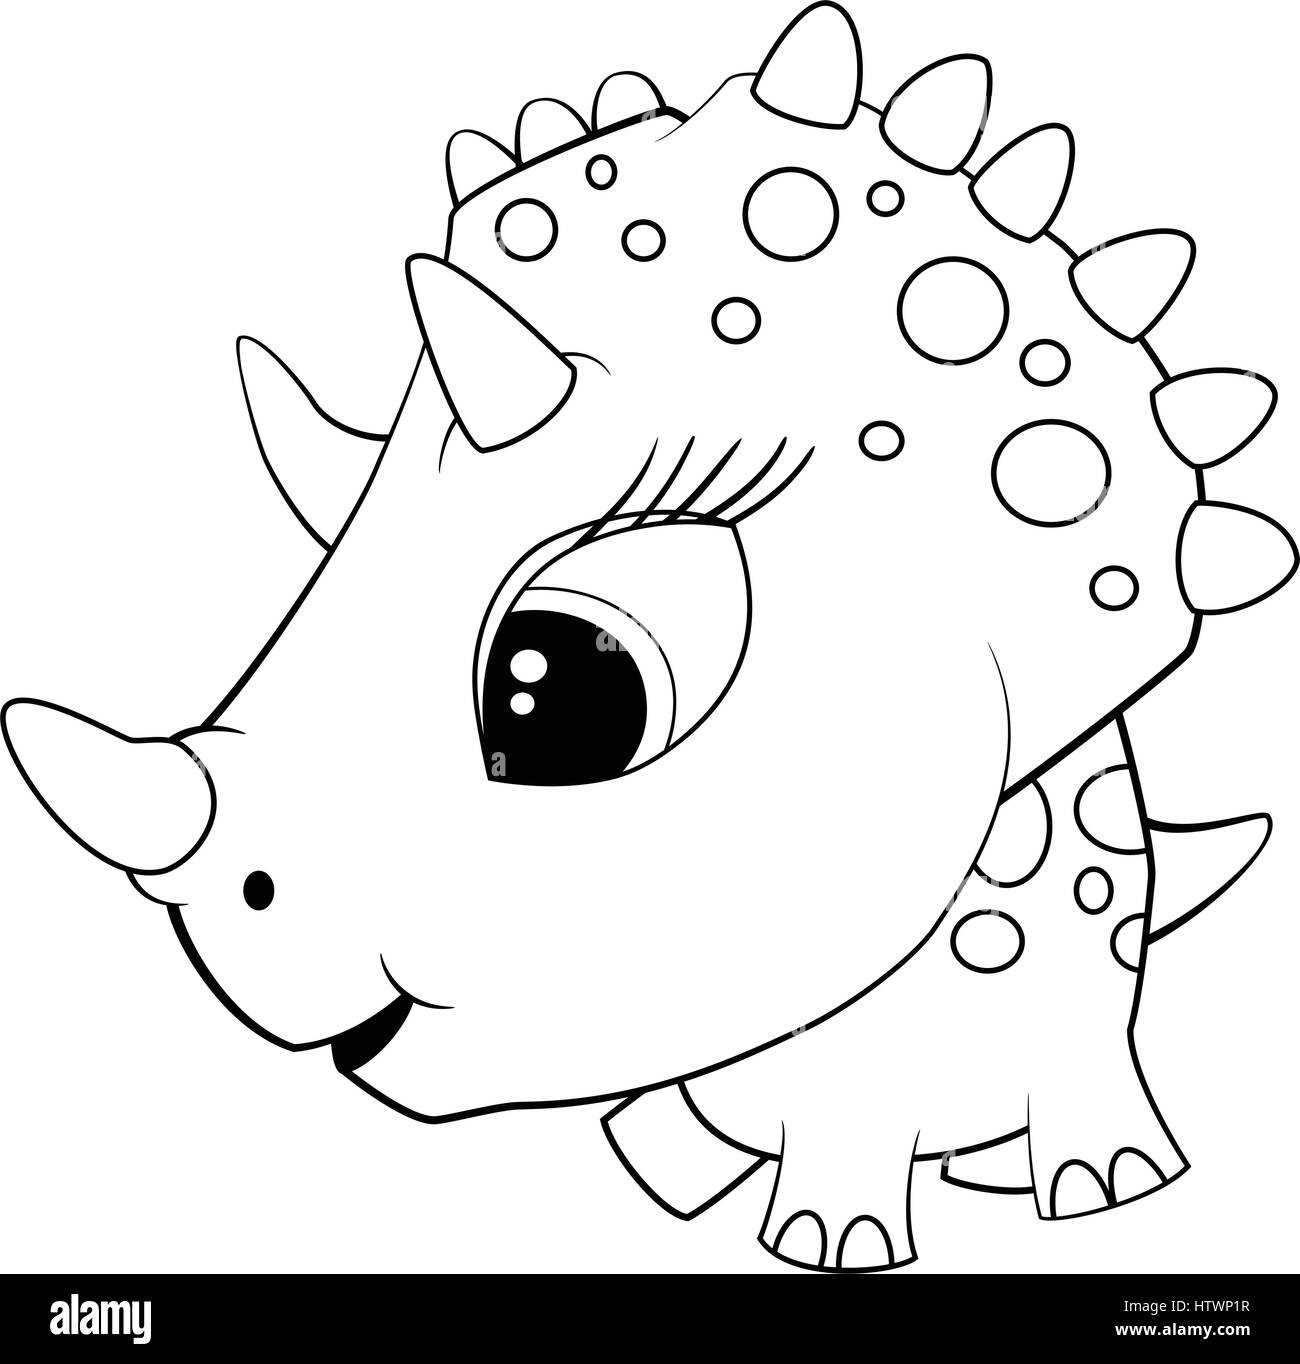 Illustration von niedlichen Cartoon blau Baby Triceratops Dinosaurier. Vektor EPS 8. Stock Vektor